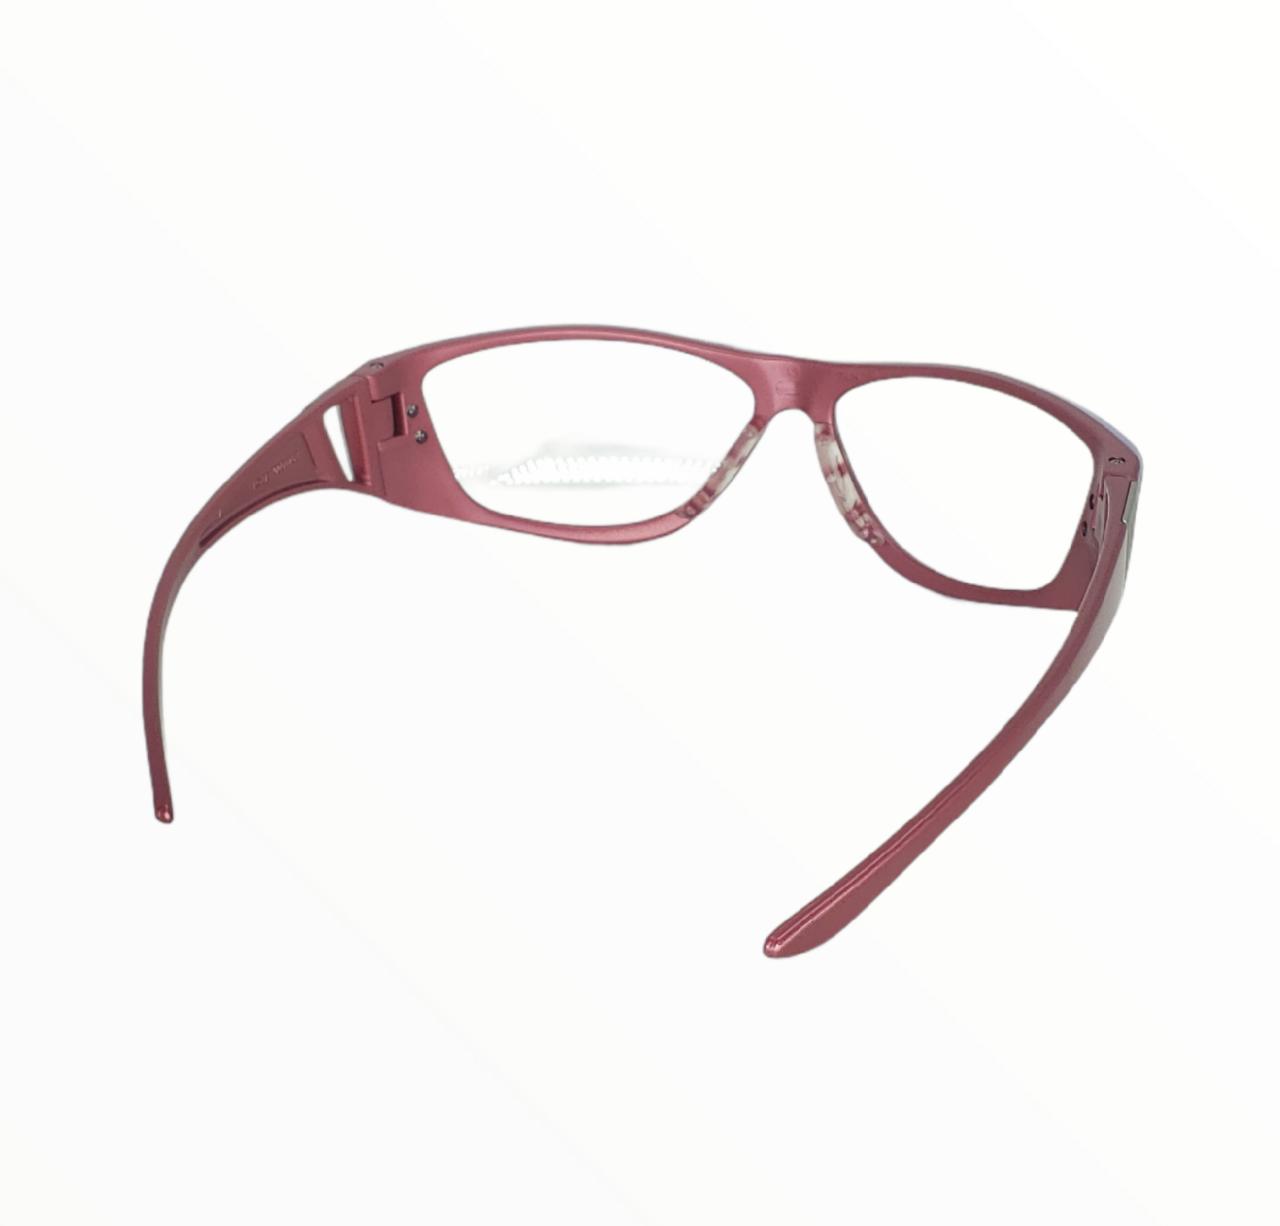 Oculos Starling Arma.Vermelha Lente Incolor Ca27689 Msa                                                                 